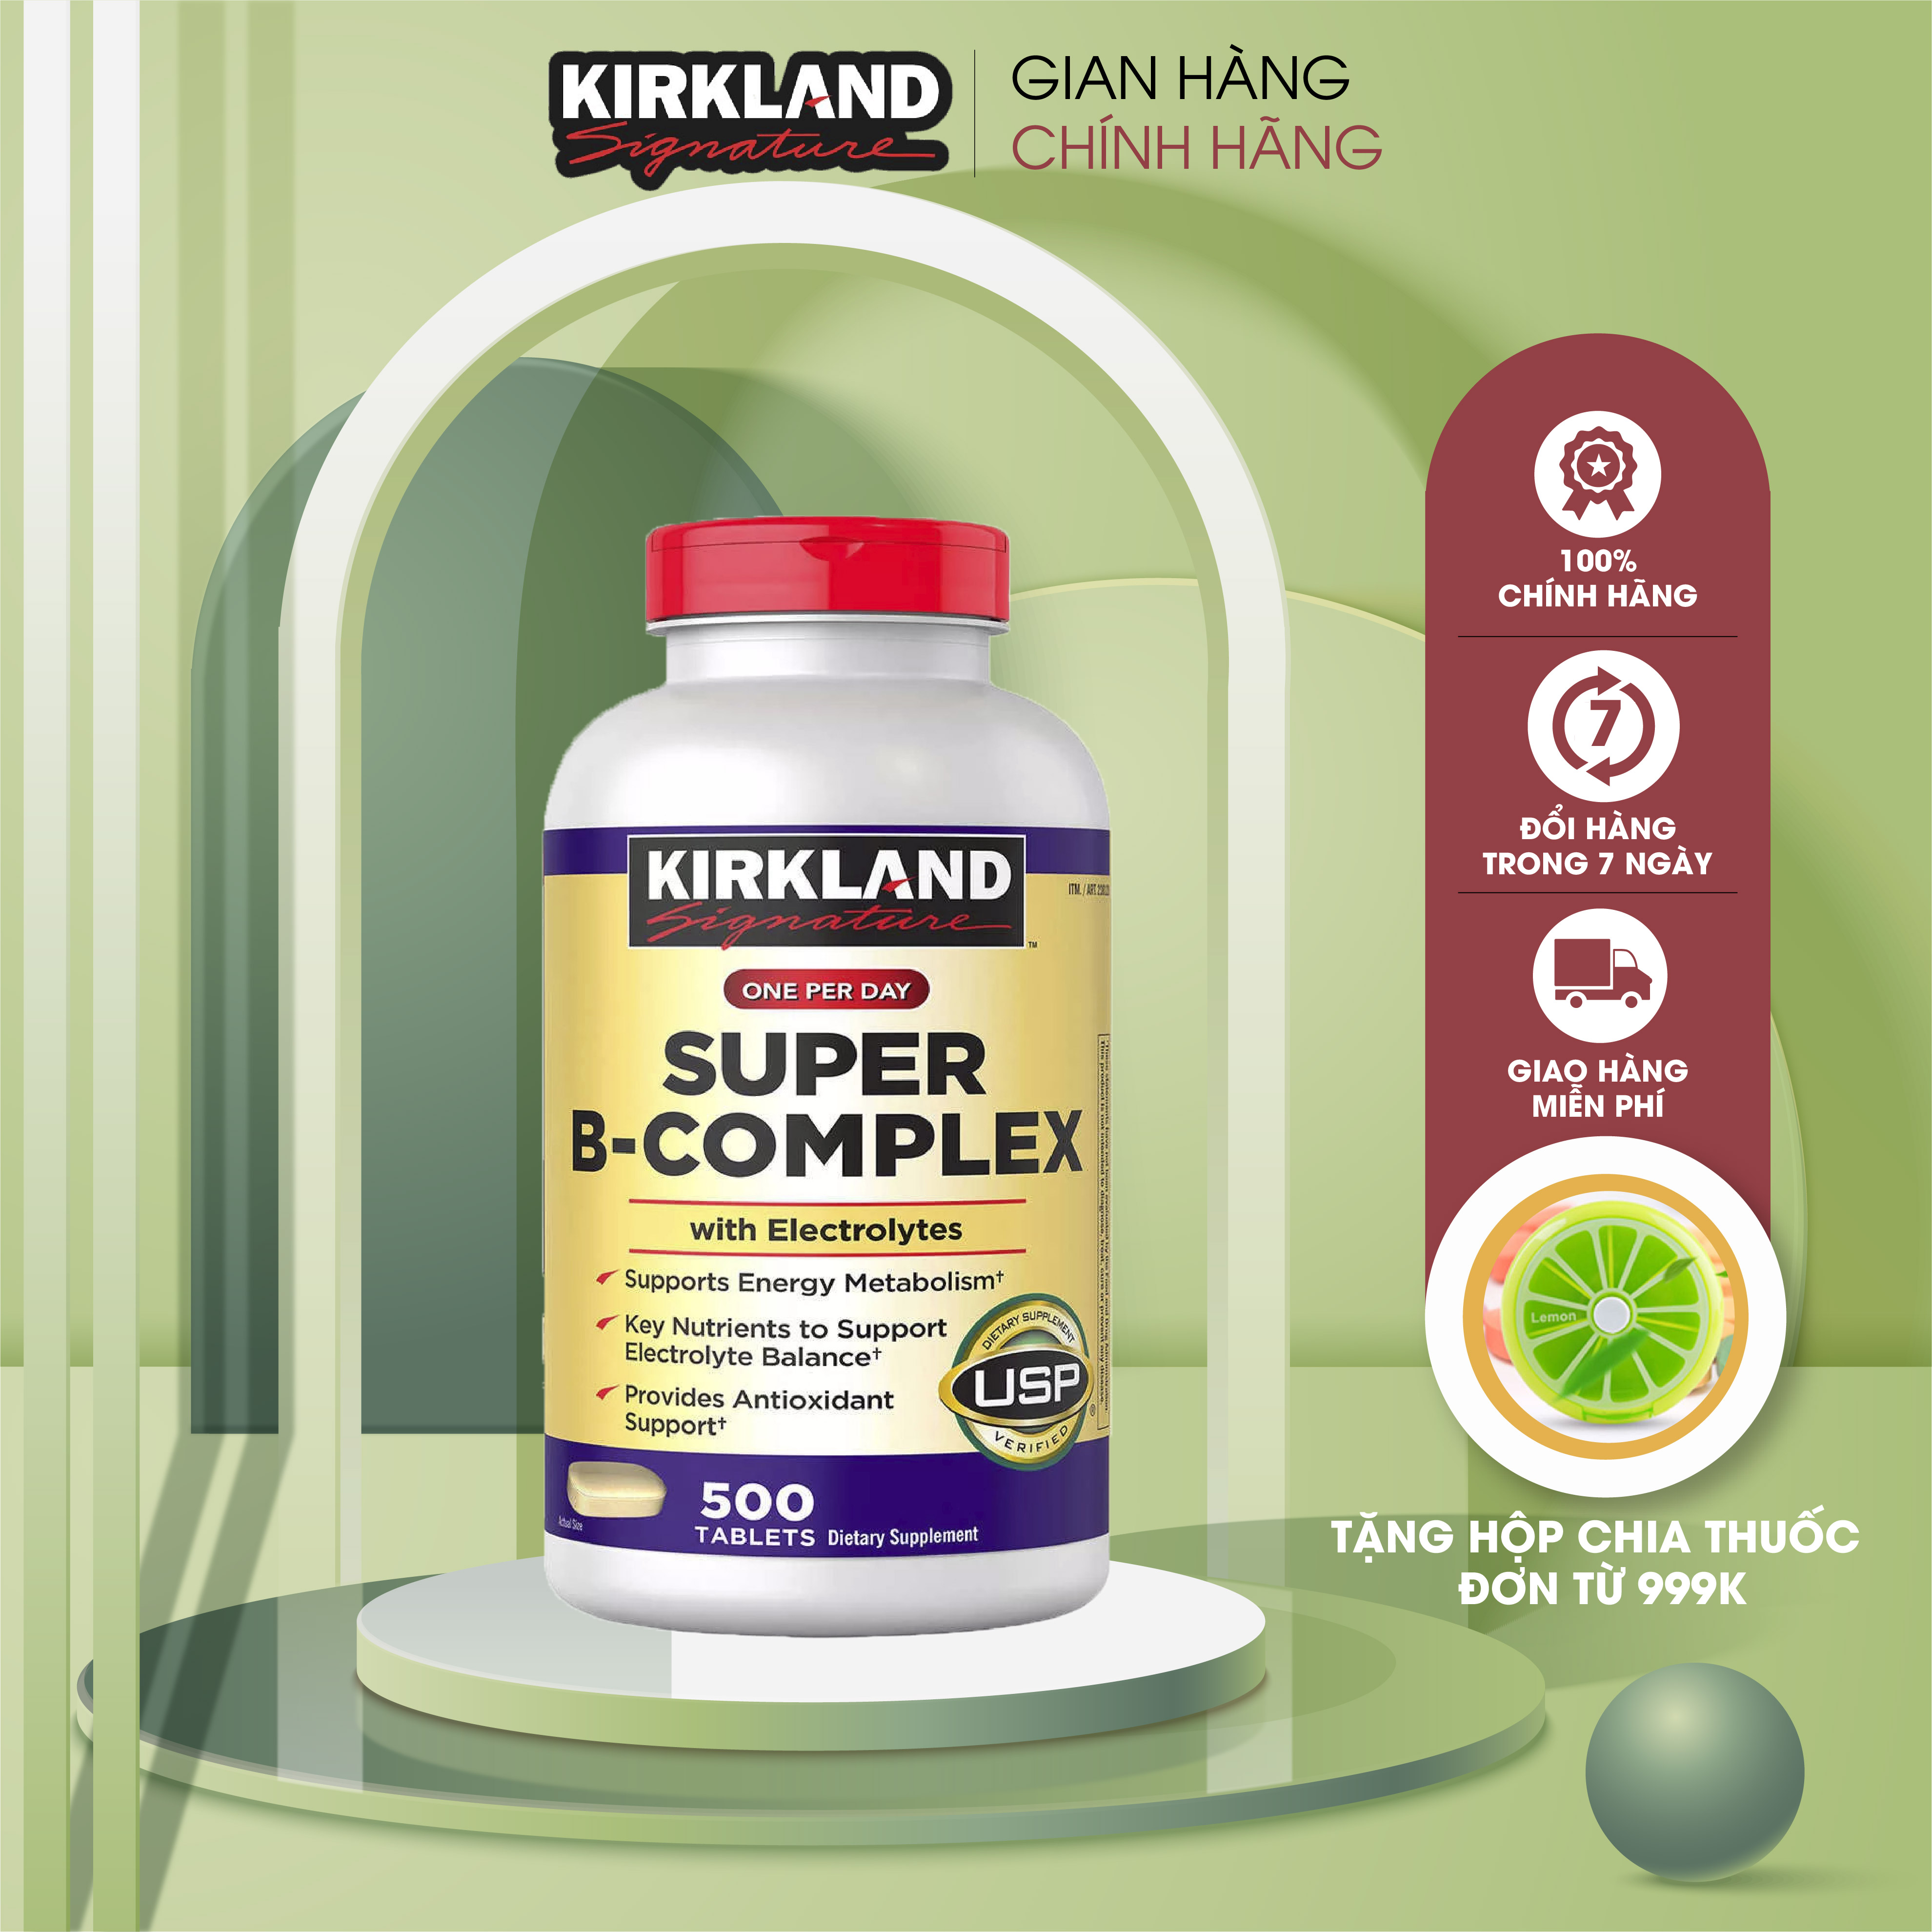 Viên uống bổ sung Vitamin B Tổng Hợp Super B-Complex Kirkland 500 Viên